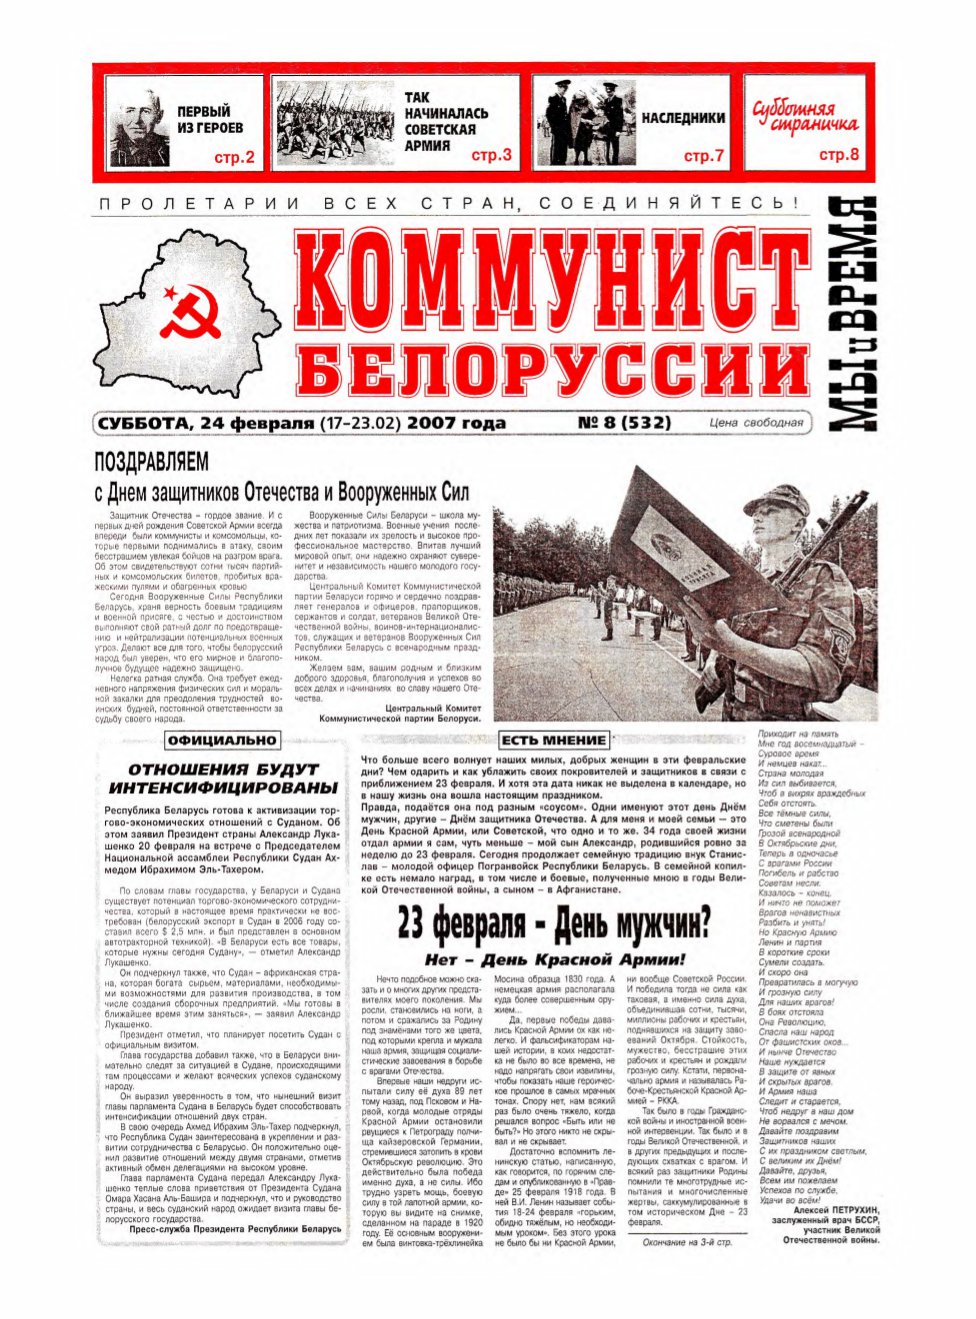 Коммунист Белорусси 08 (532) 2007